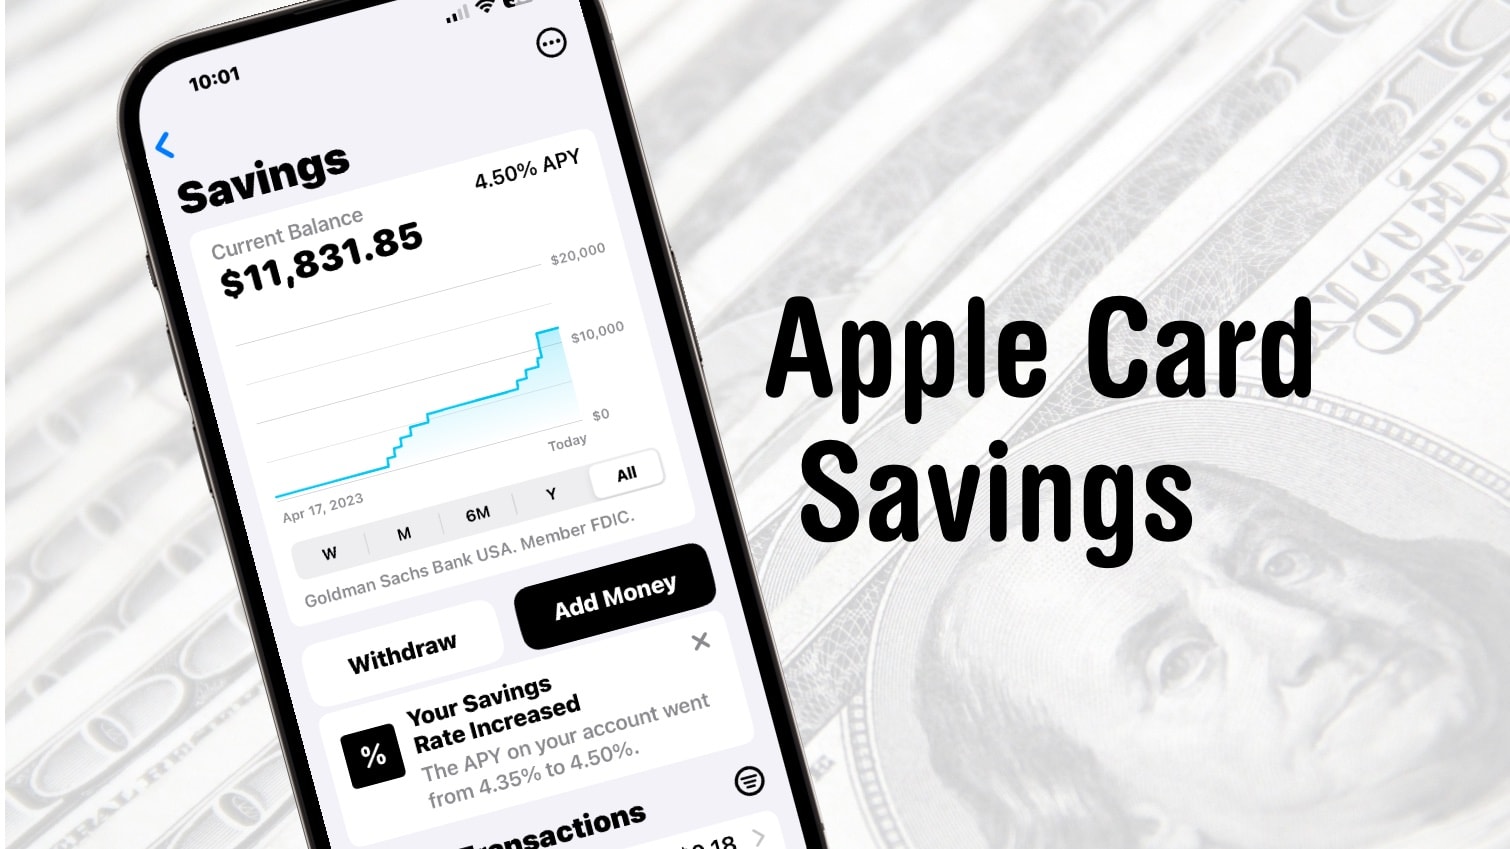 Apple Card Savings account at 4.5%